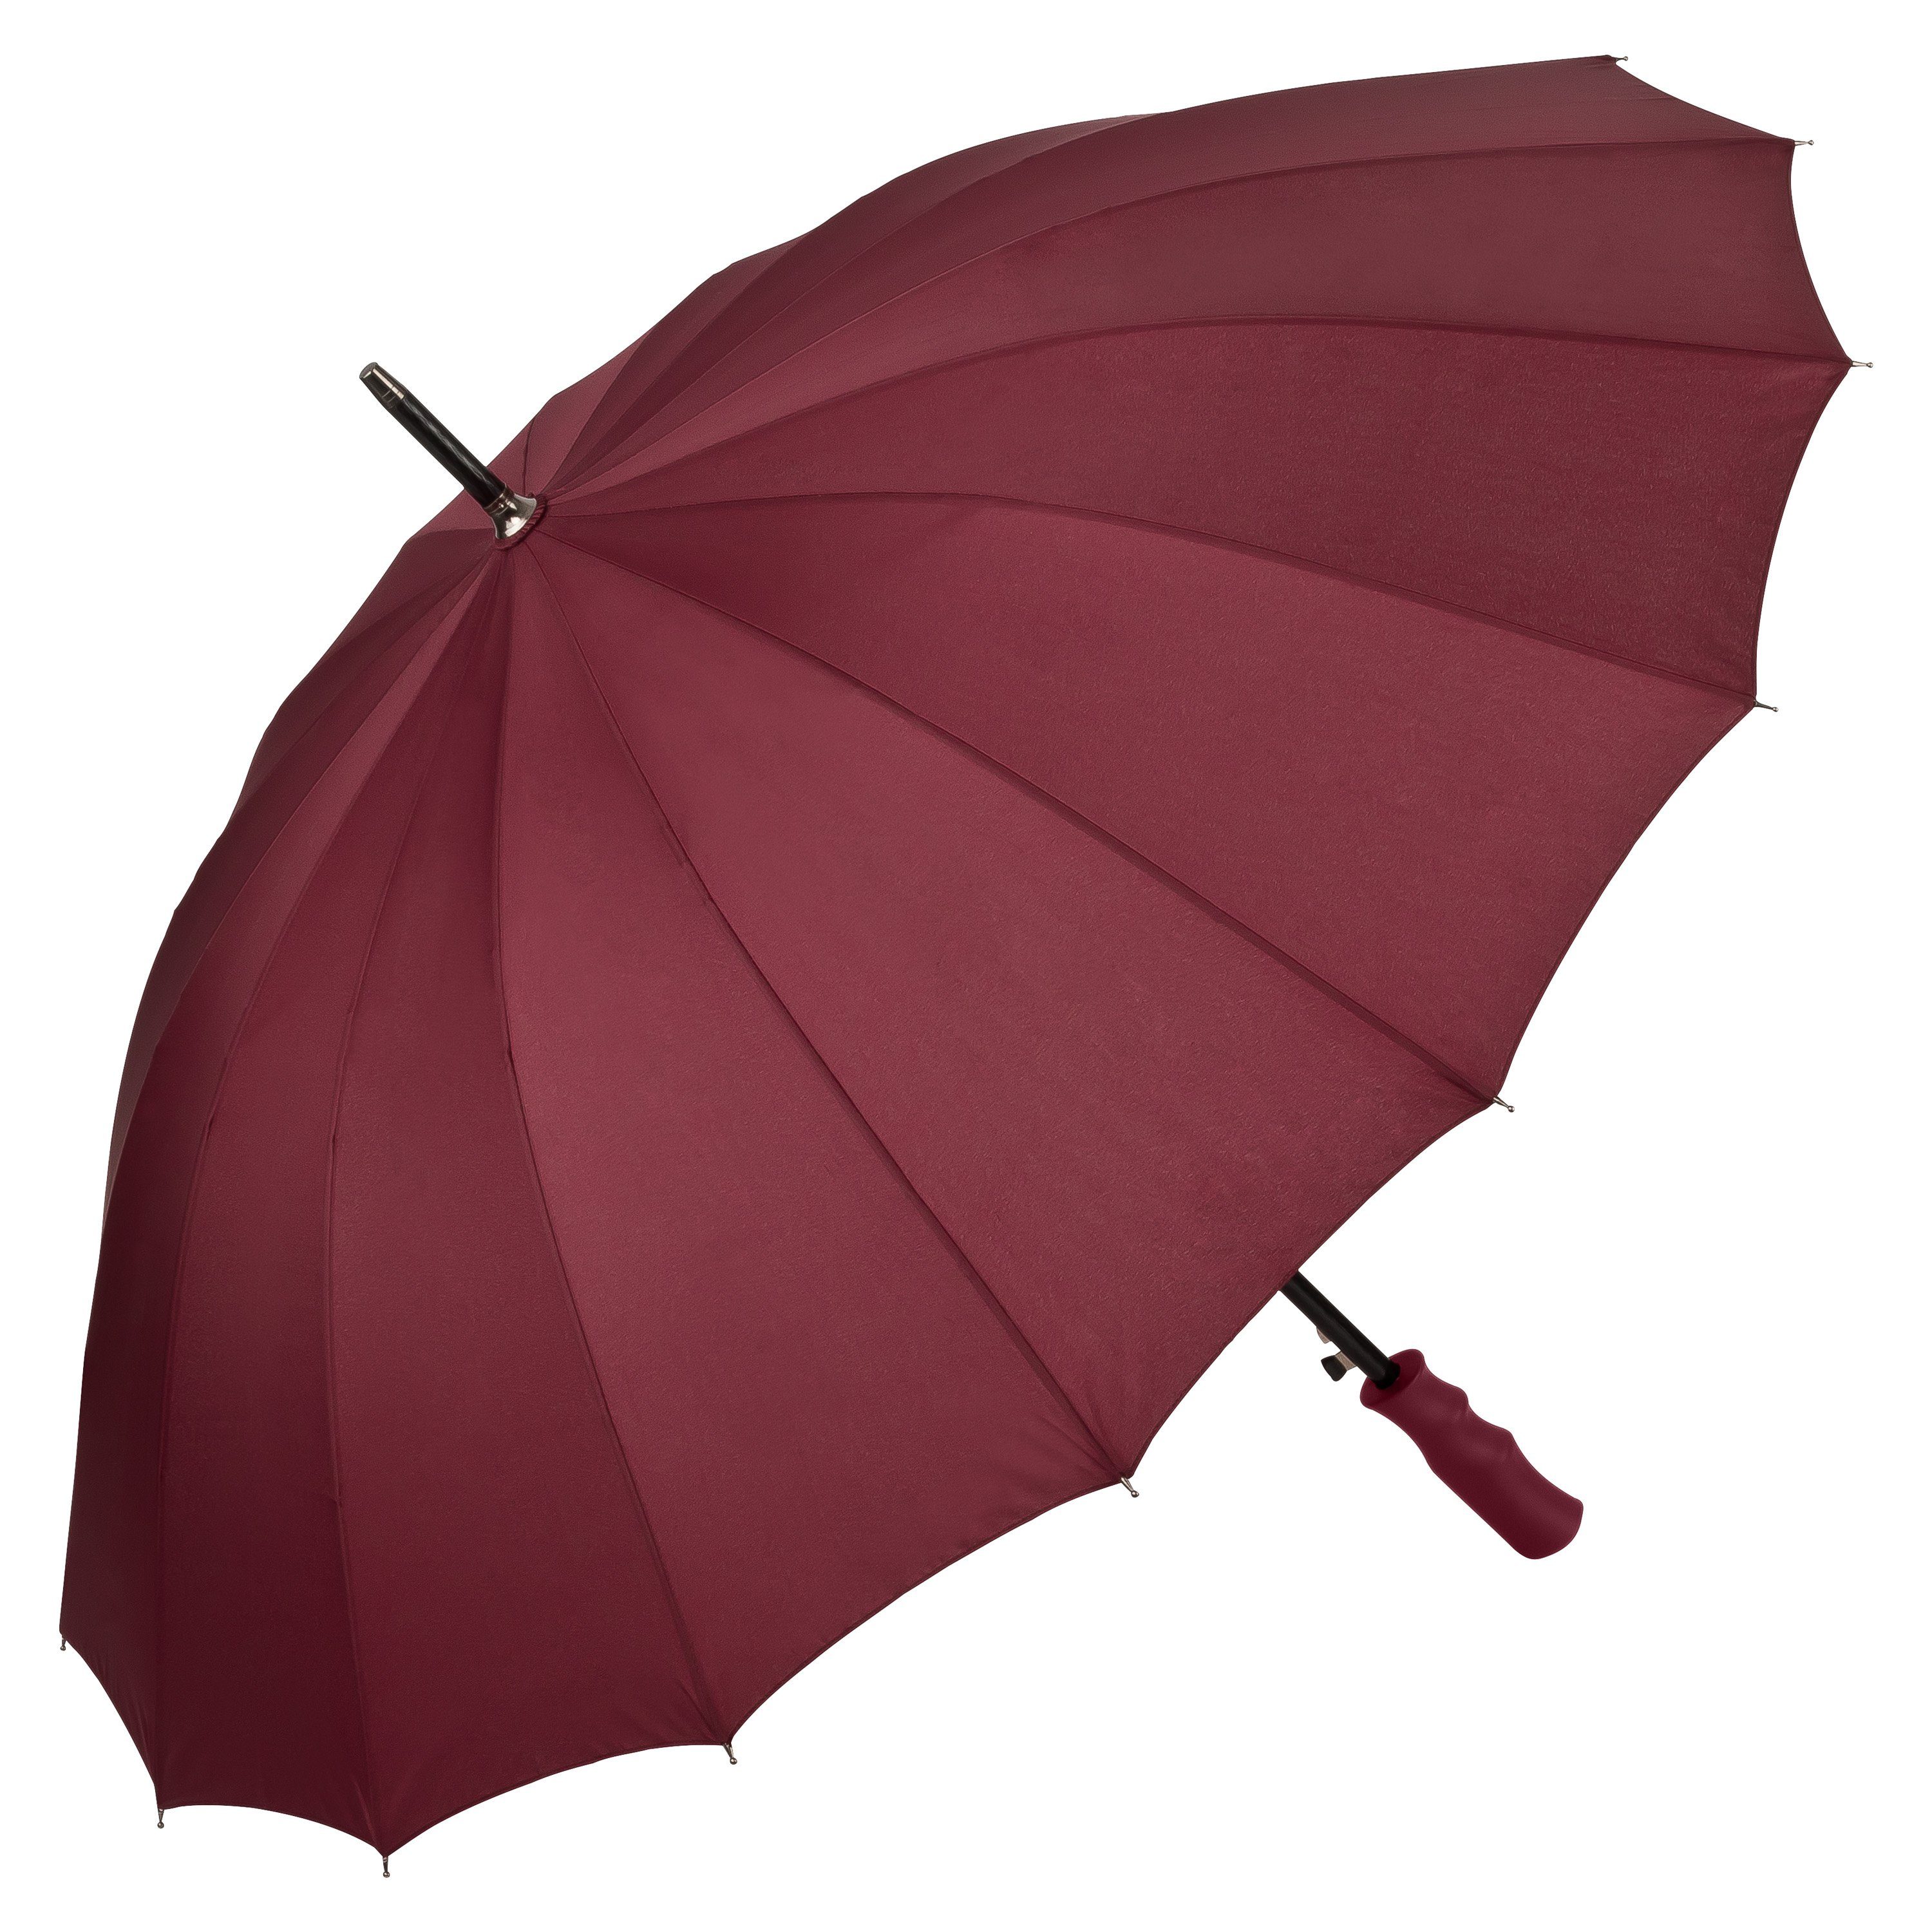 von Lilienfeld Stockregenschirm Regenschirm Colin XL Auf-Automatik Schirmdurchmesser 103 cm, Griff in Schirmfarbe bordeaux